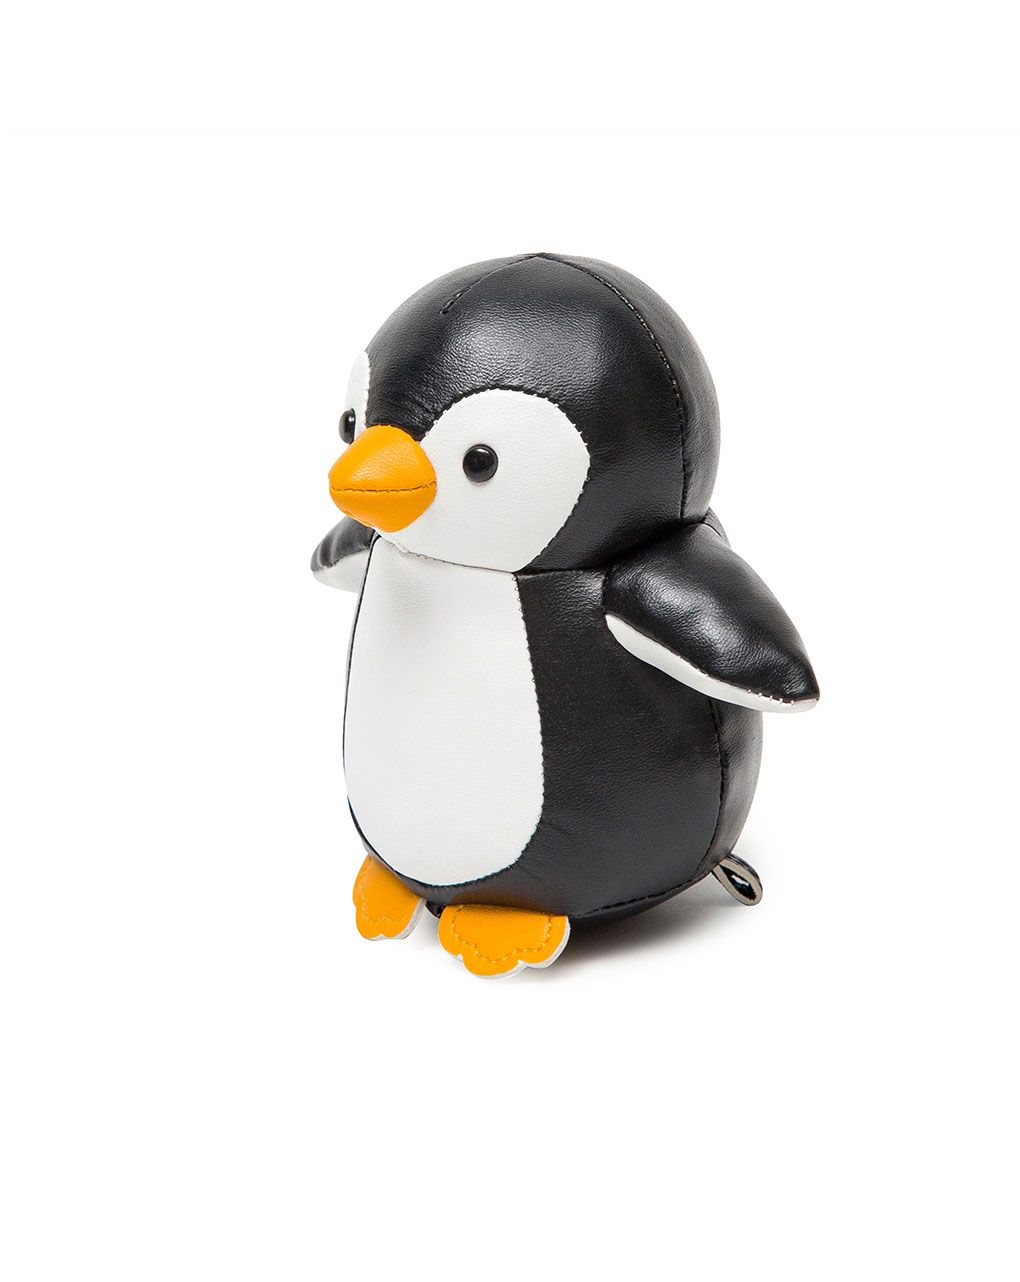 Martin il pinguino - little big friends - Little big friends